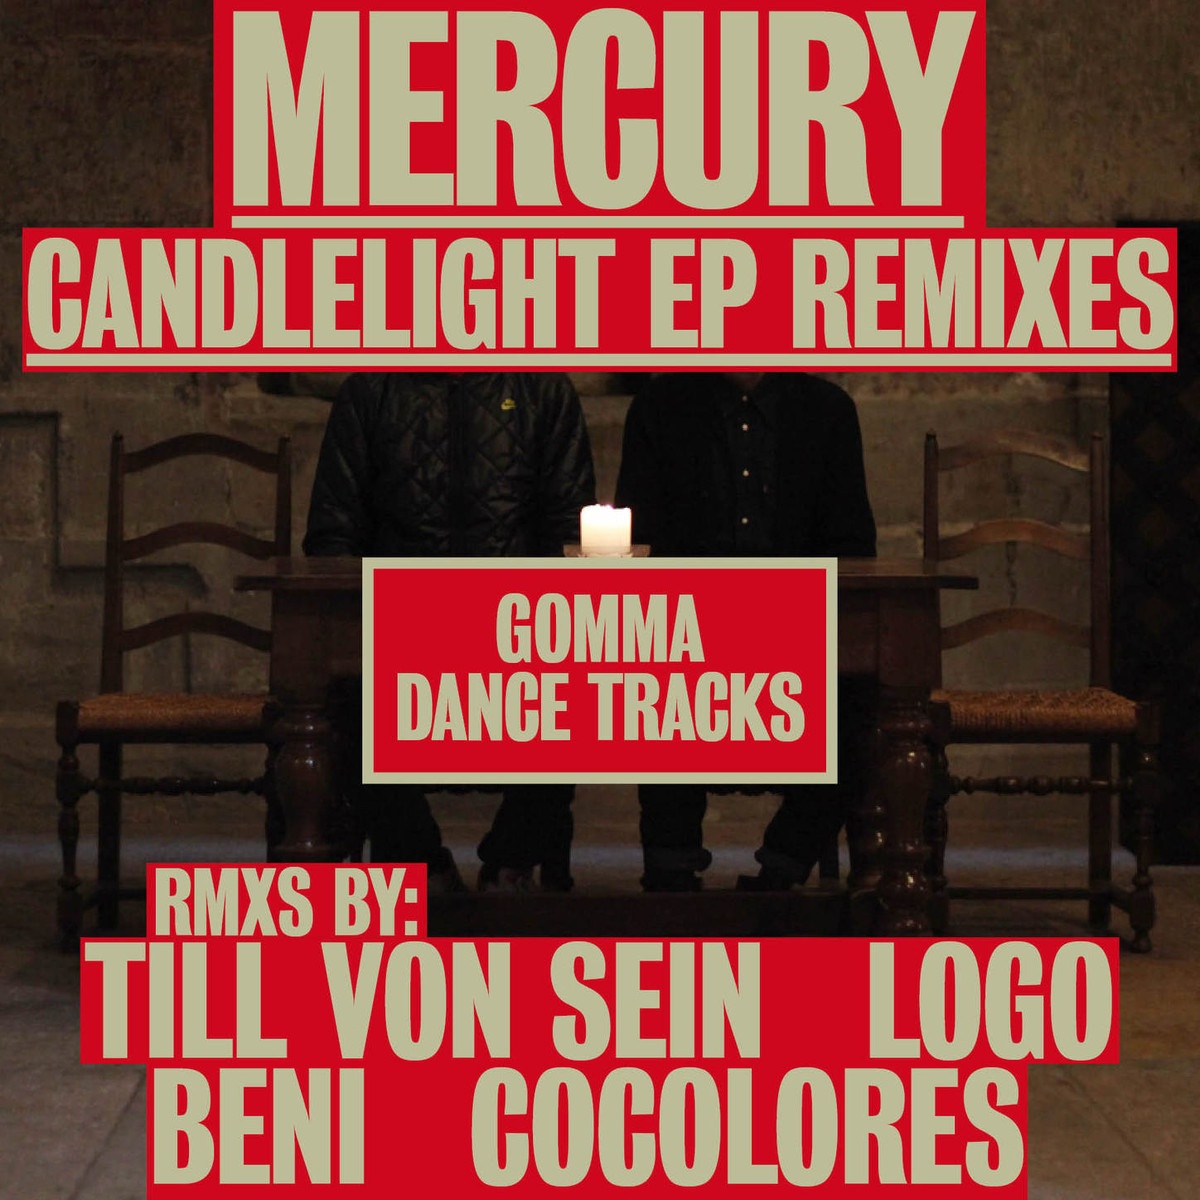 Candlelight - Mercury Remix